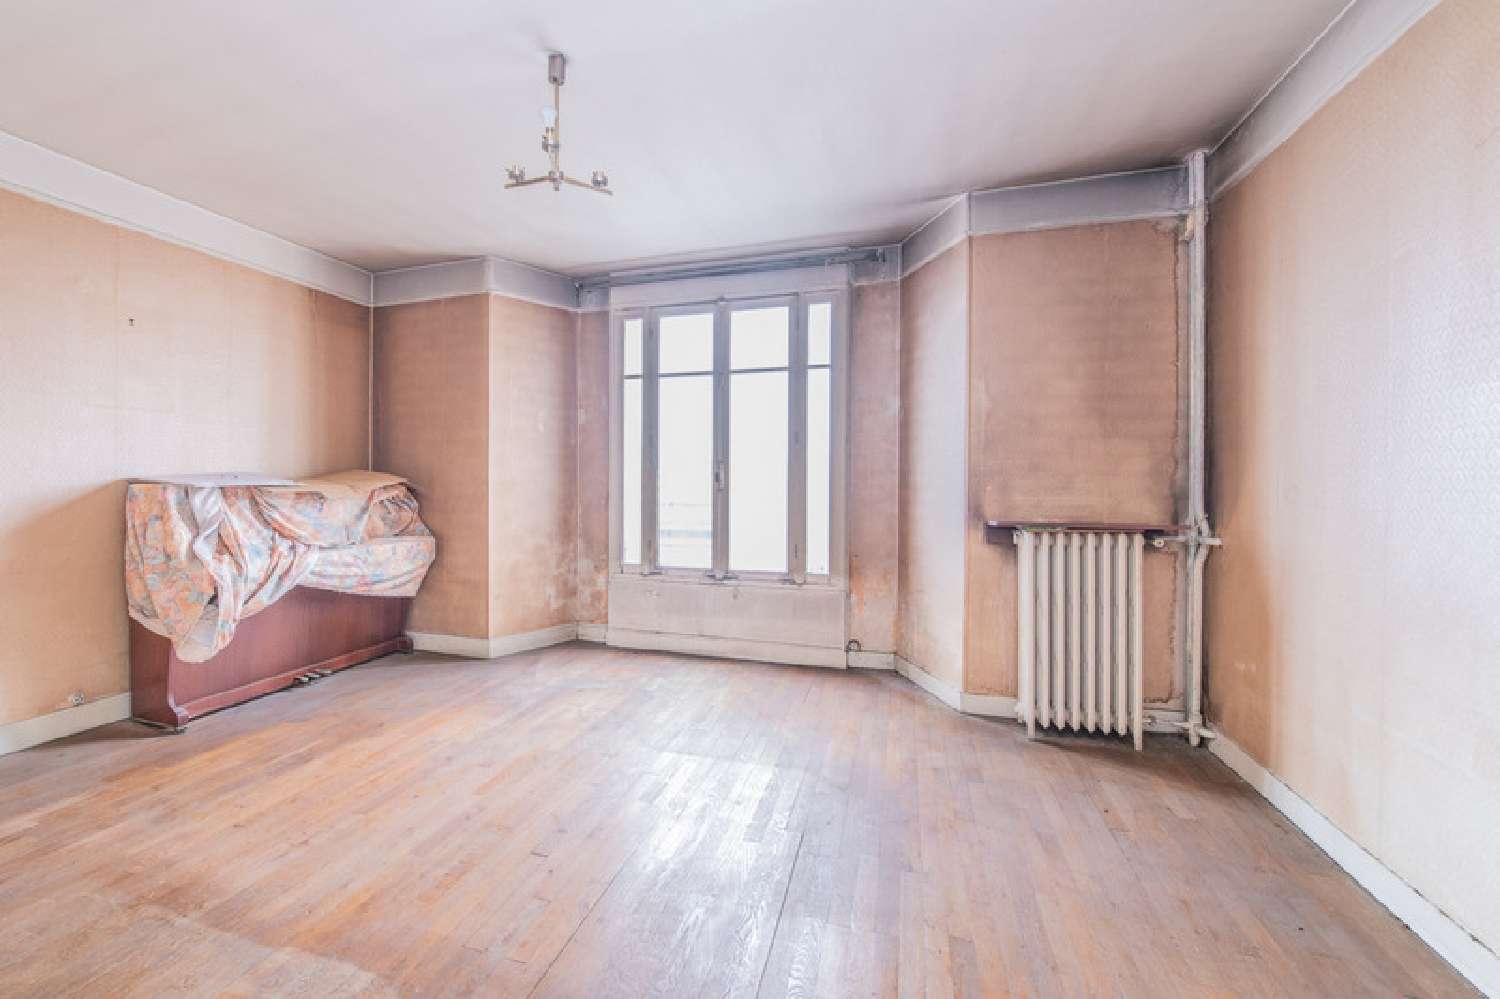  for sale apartment Boulogne-Billancourt Hauts-de-Seine 3